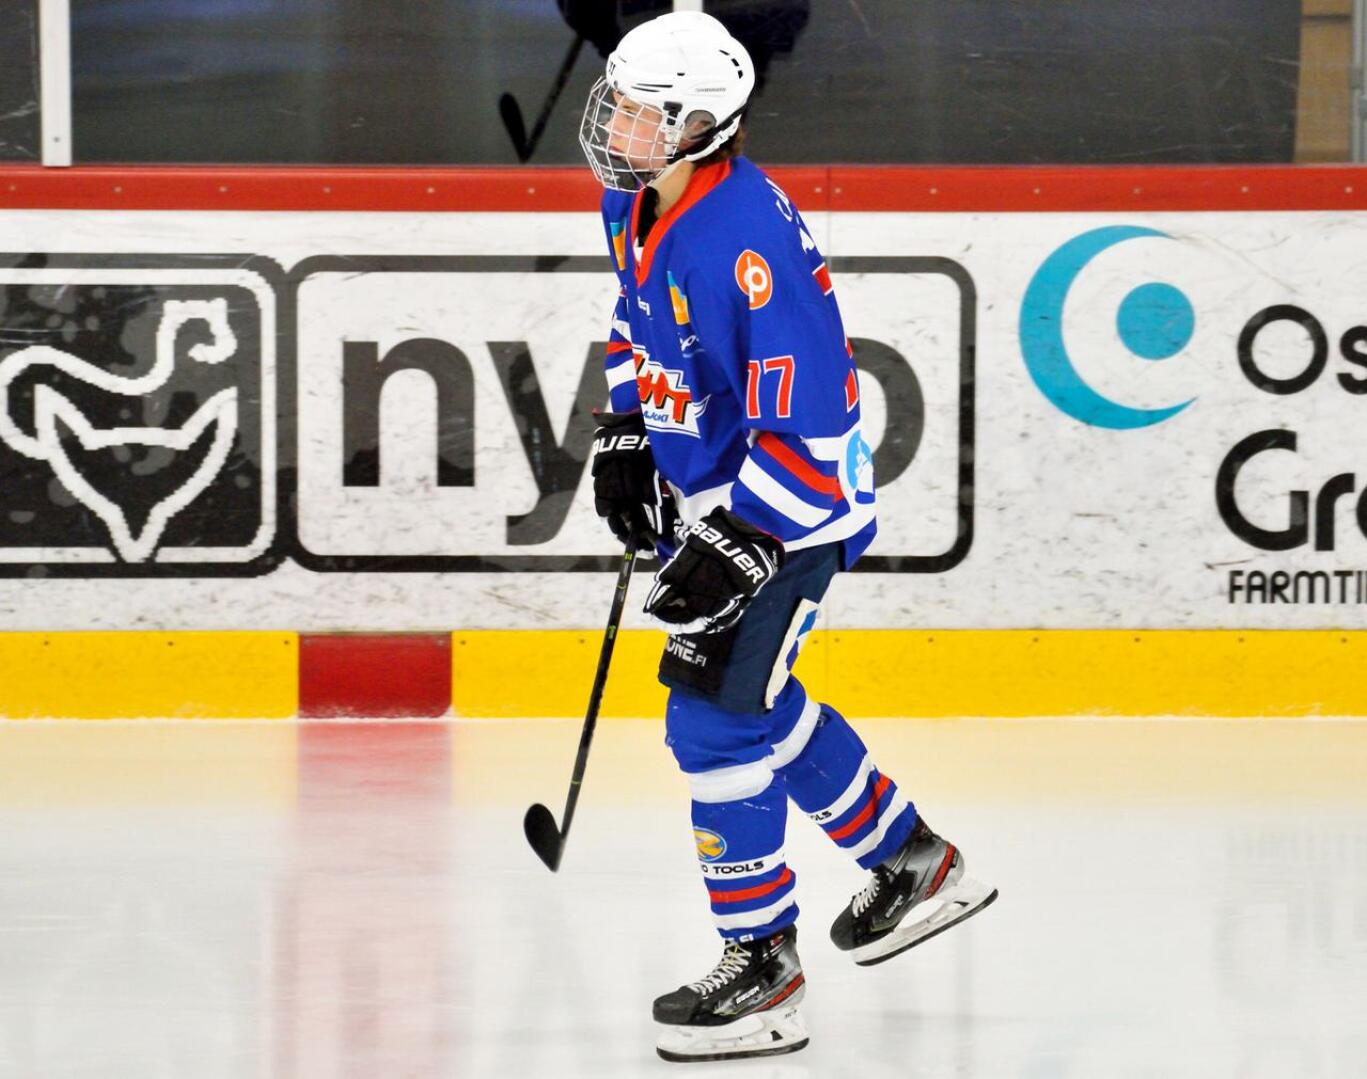 Puolustajana pelaava Häkkilä pelasi vielä pari vuotta sitten JHT:n U18-joukkueessa mestistä.